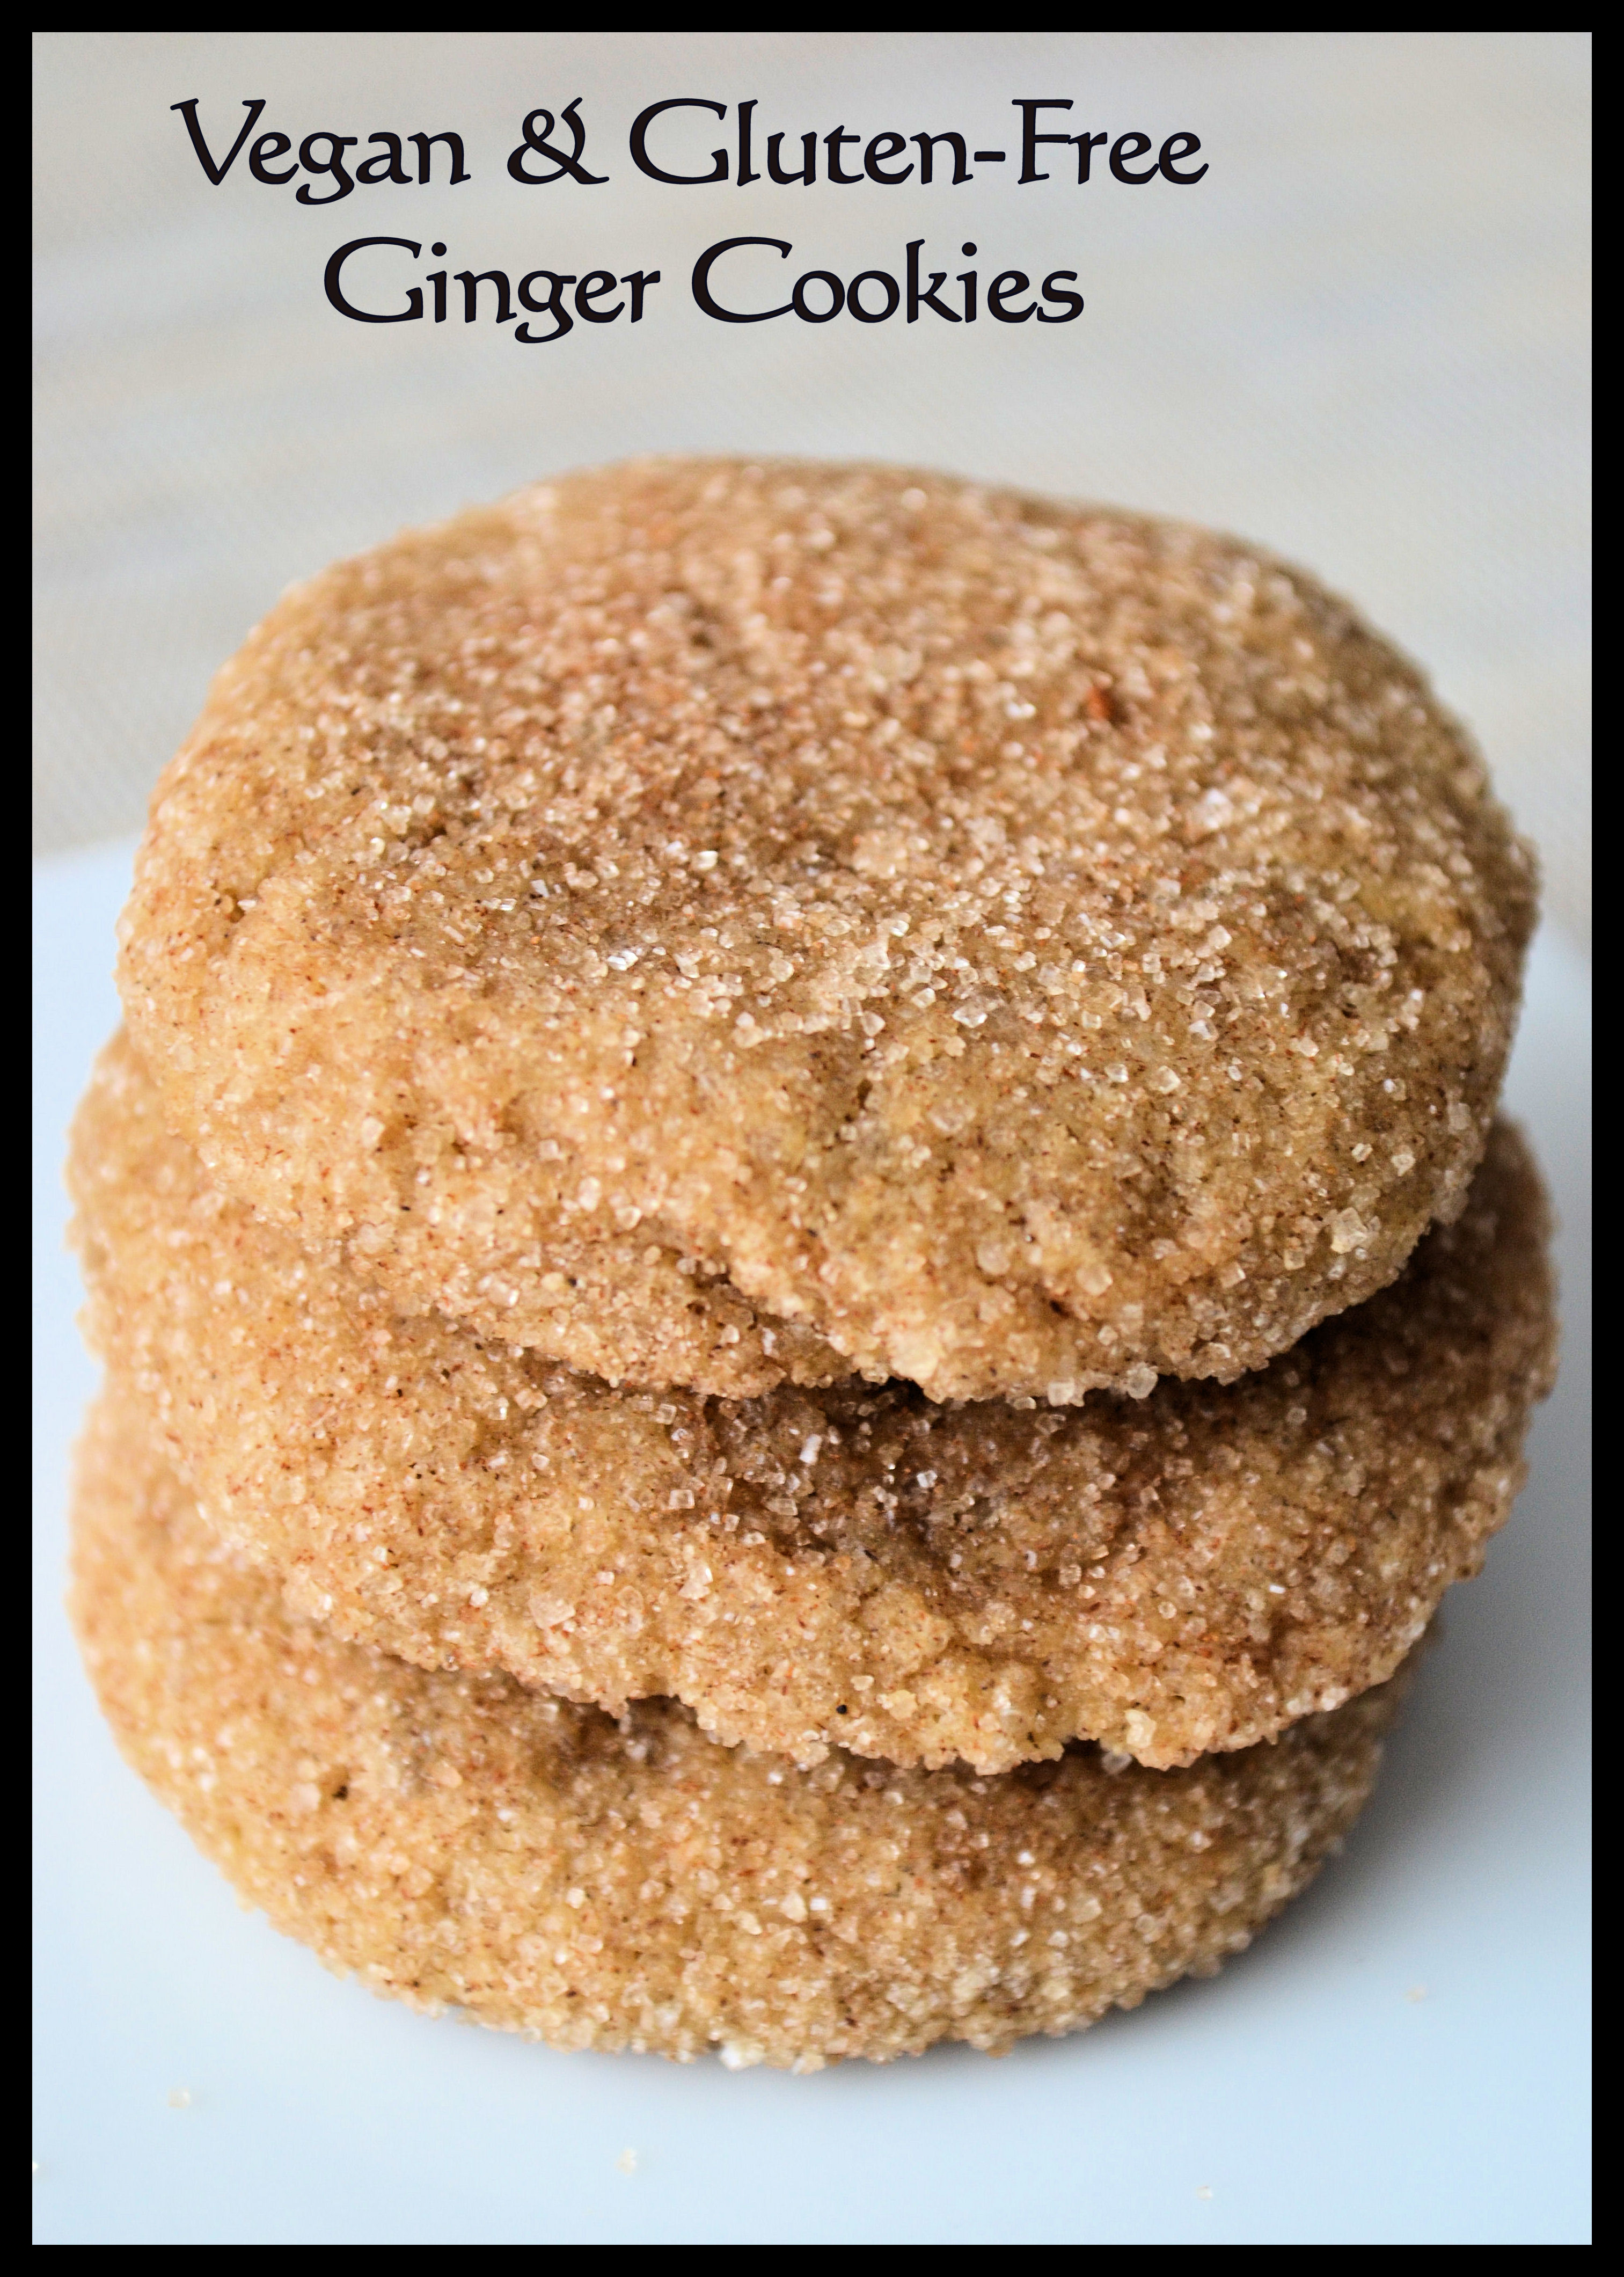 Vegan & Gluten-free Ginger Cookies 1